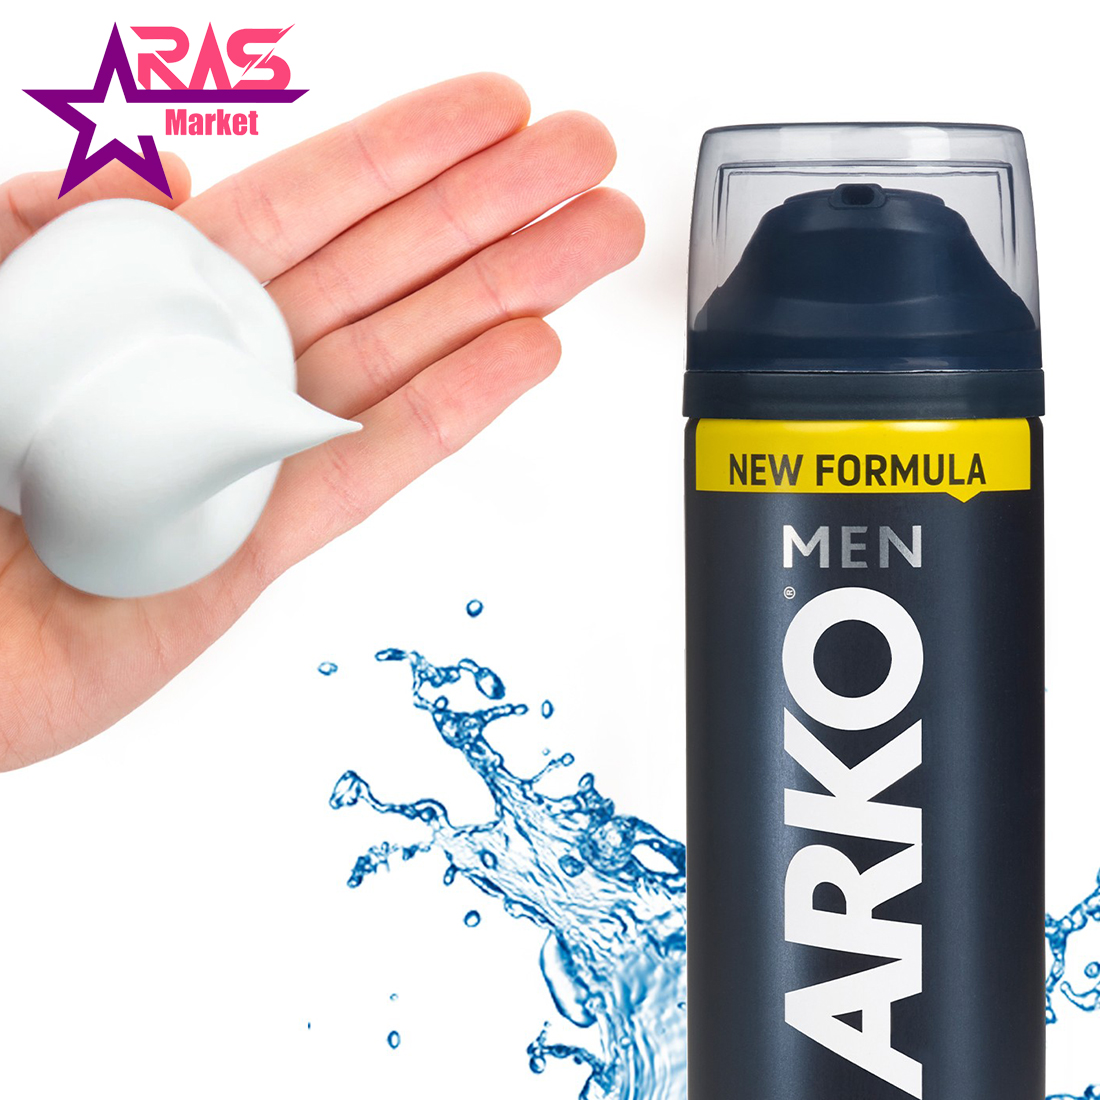 فوم اصلاح آرکو مدل Cool حجم 200 میلی لیتر ، فروشگاه اینترنتی ارس مارکت ، بهداشت آقایان ، arko men shaving foam